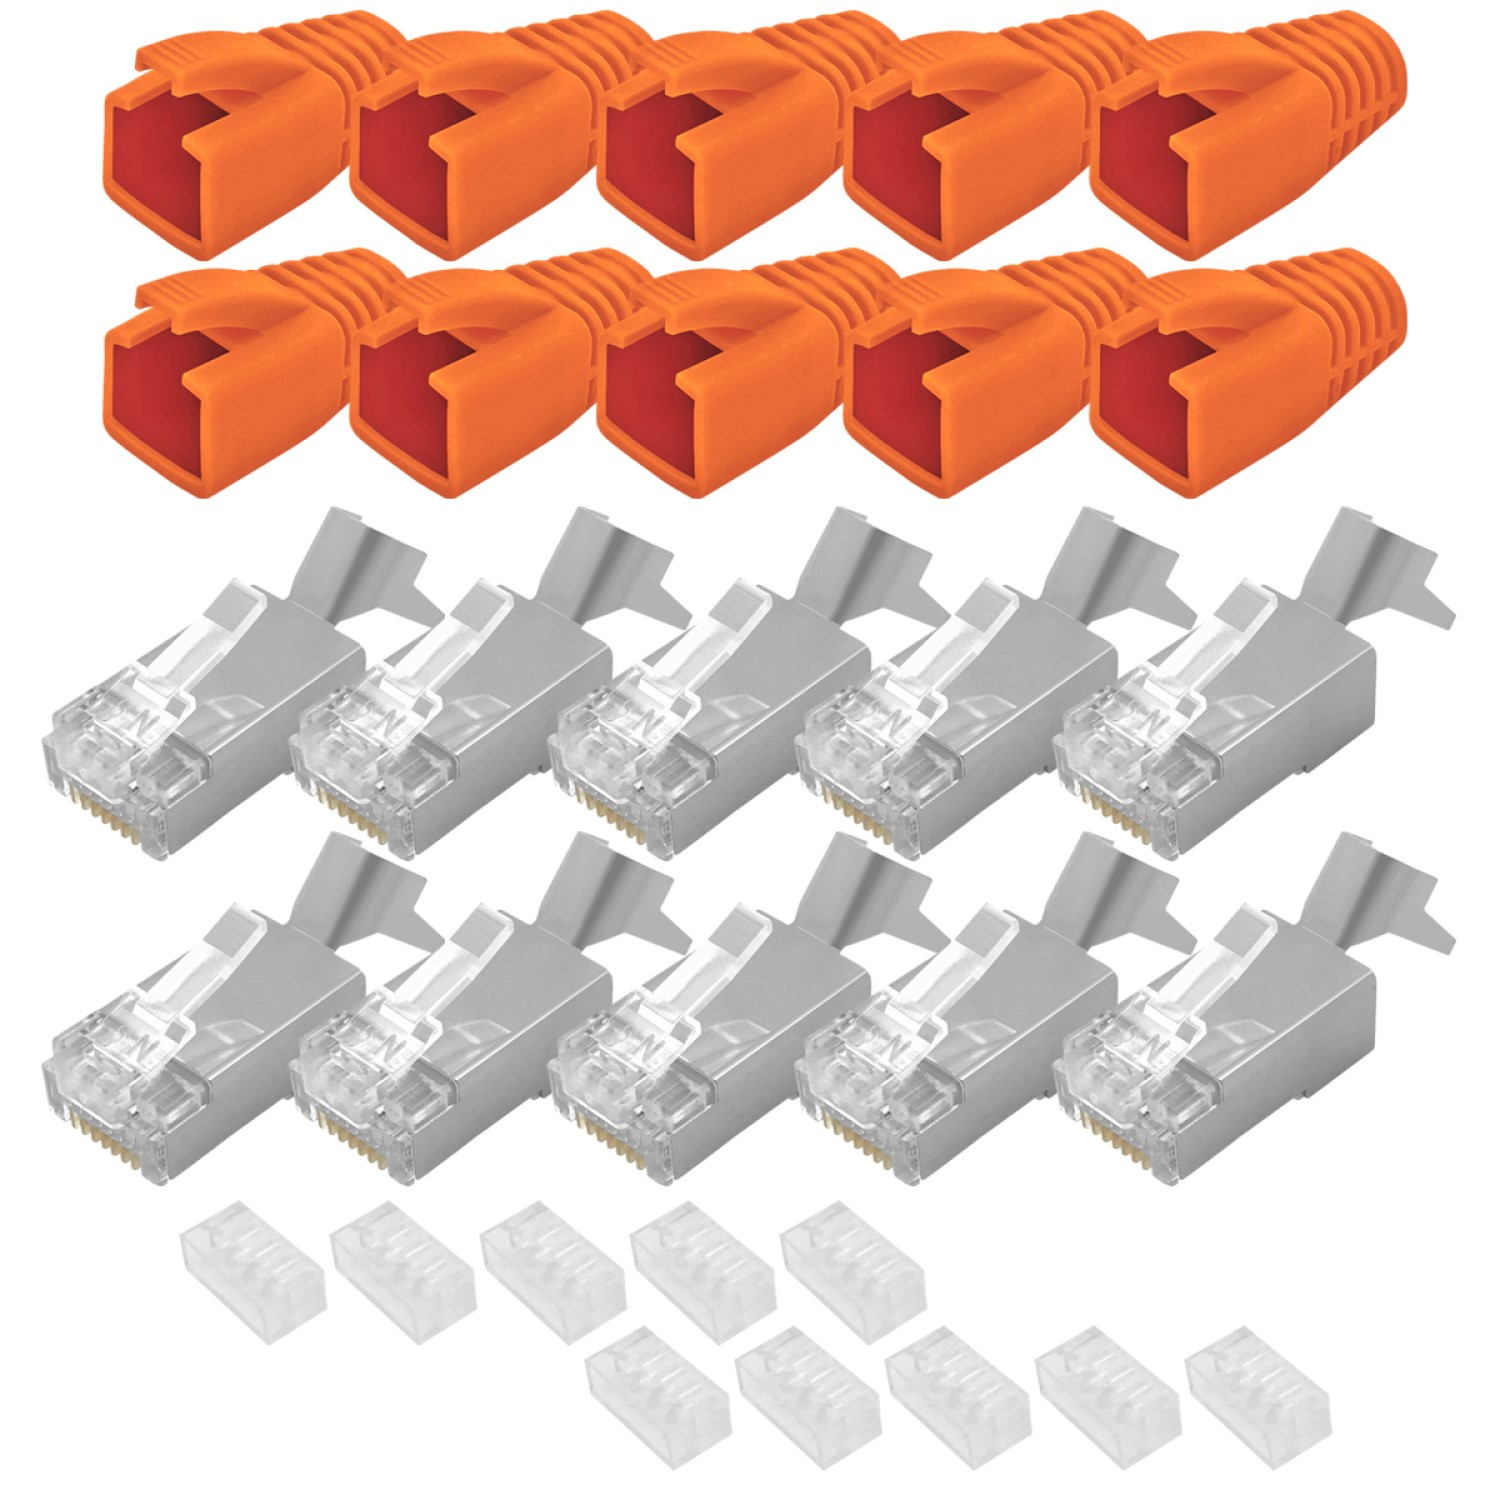 ARLI 10x Stecker, Orange Netzwerkstecker Cat7